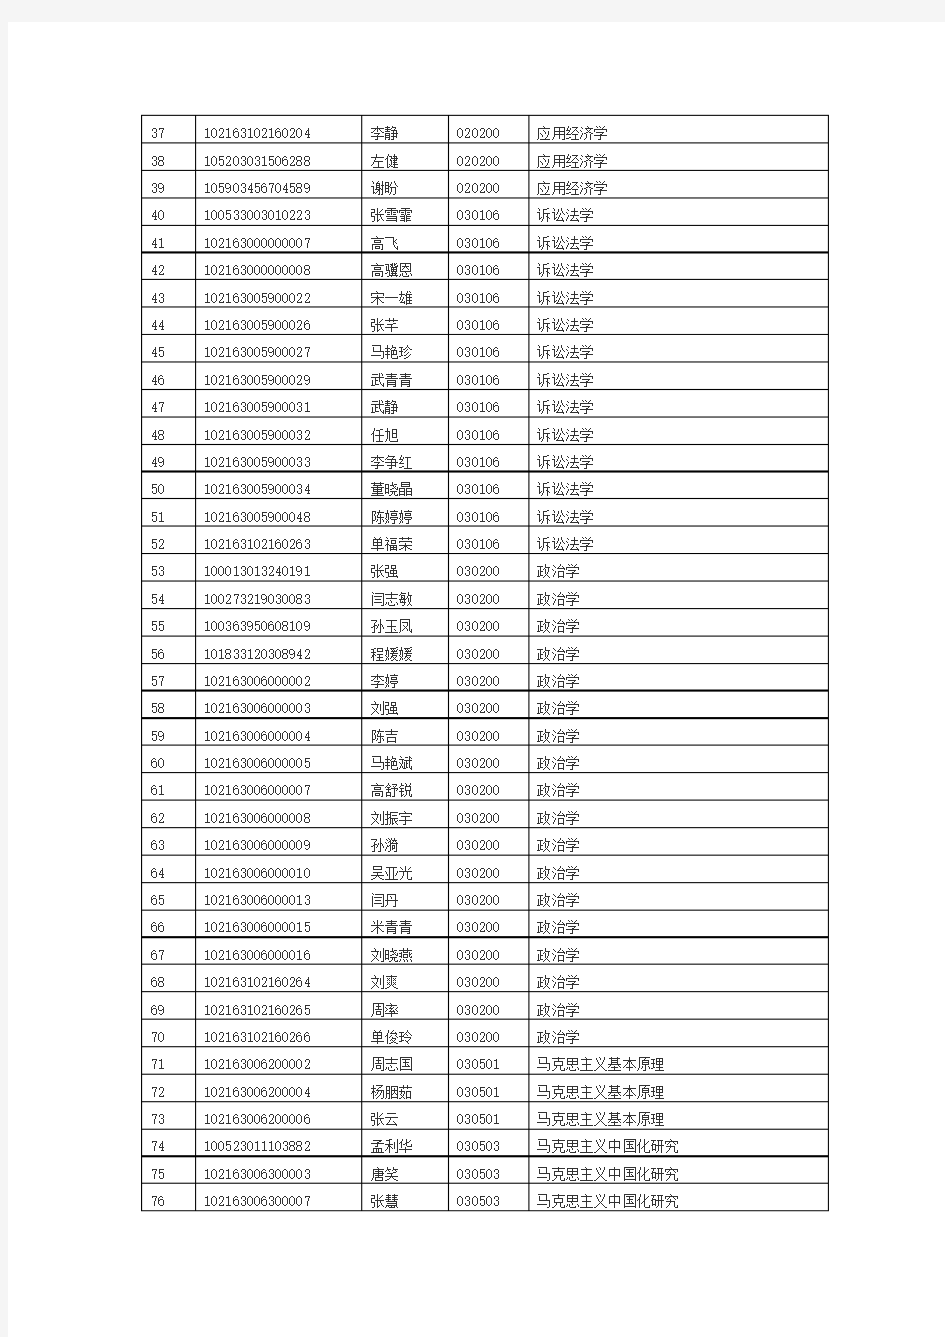 2013燕大研究生名单